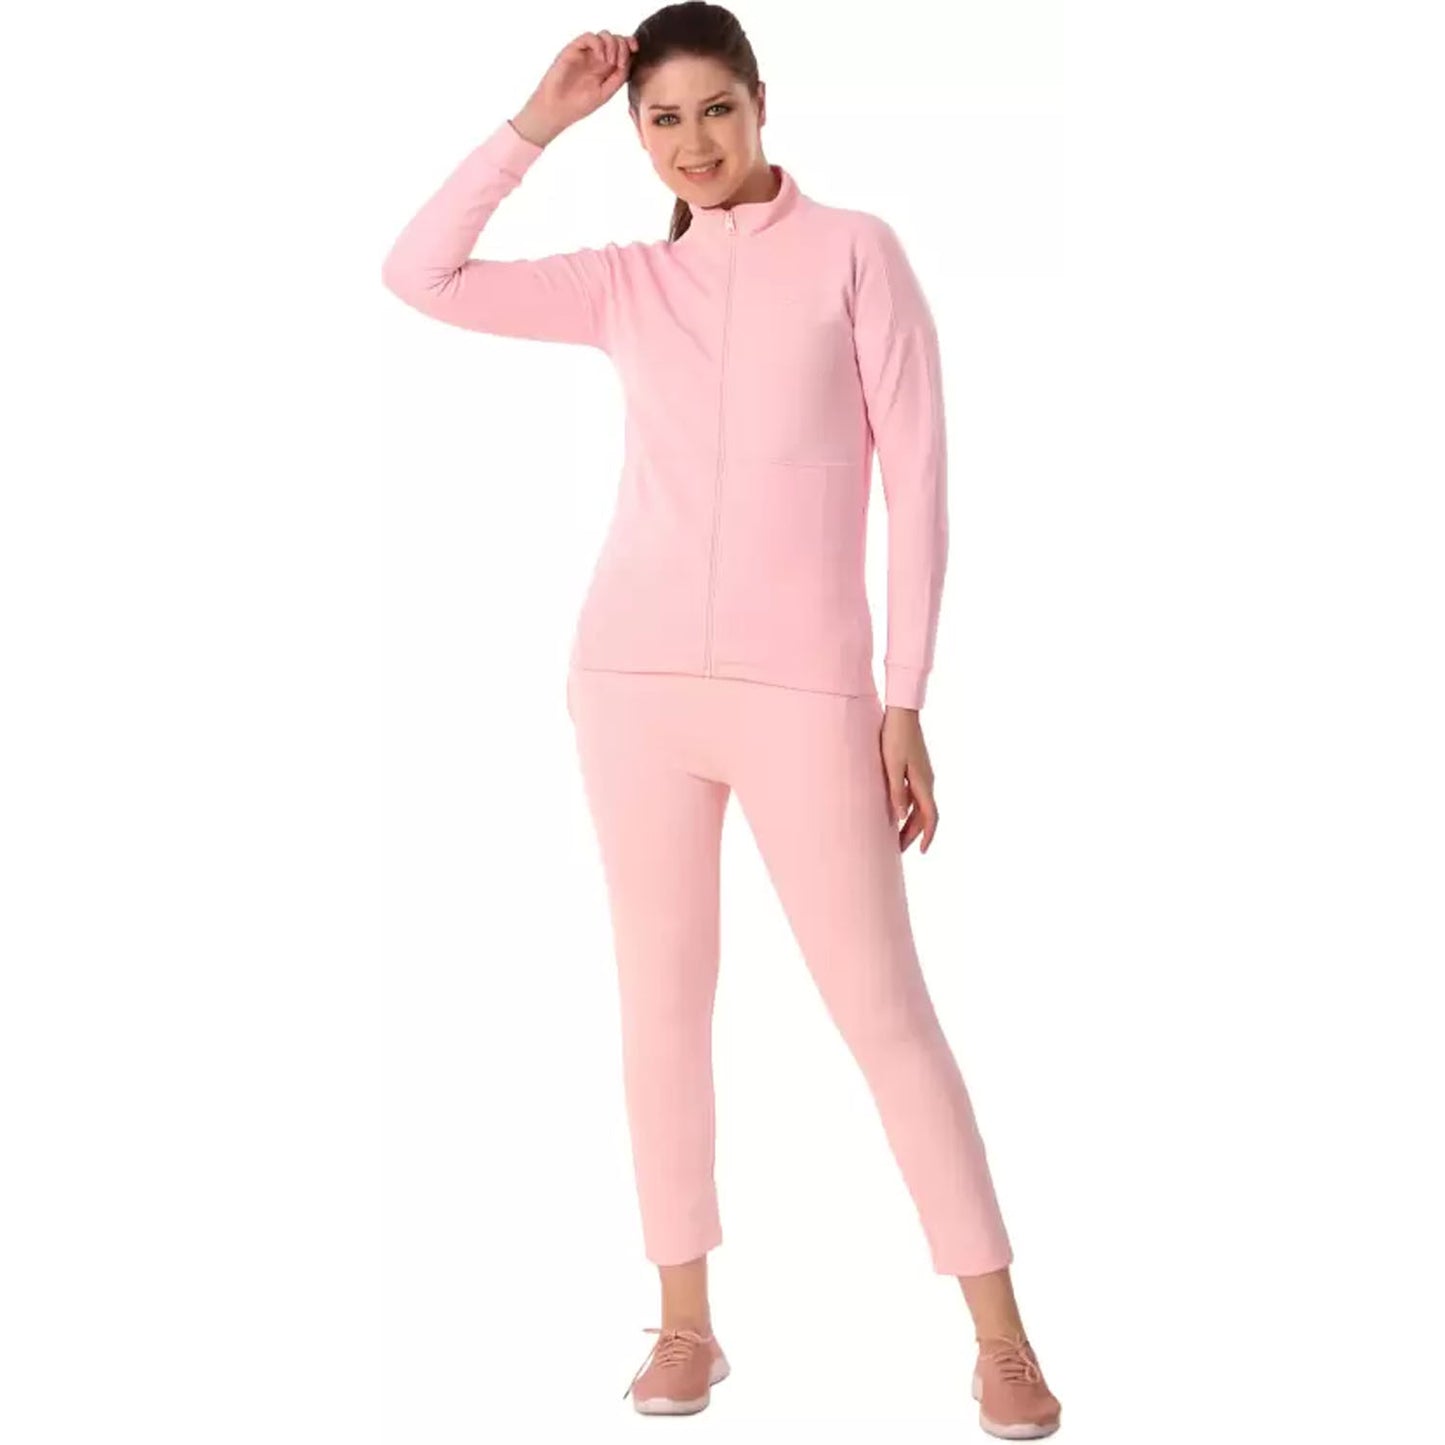 Vector X Laurel Women's Track Suit, Pink - Best Price online Prokicksports.com